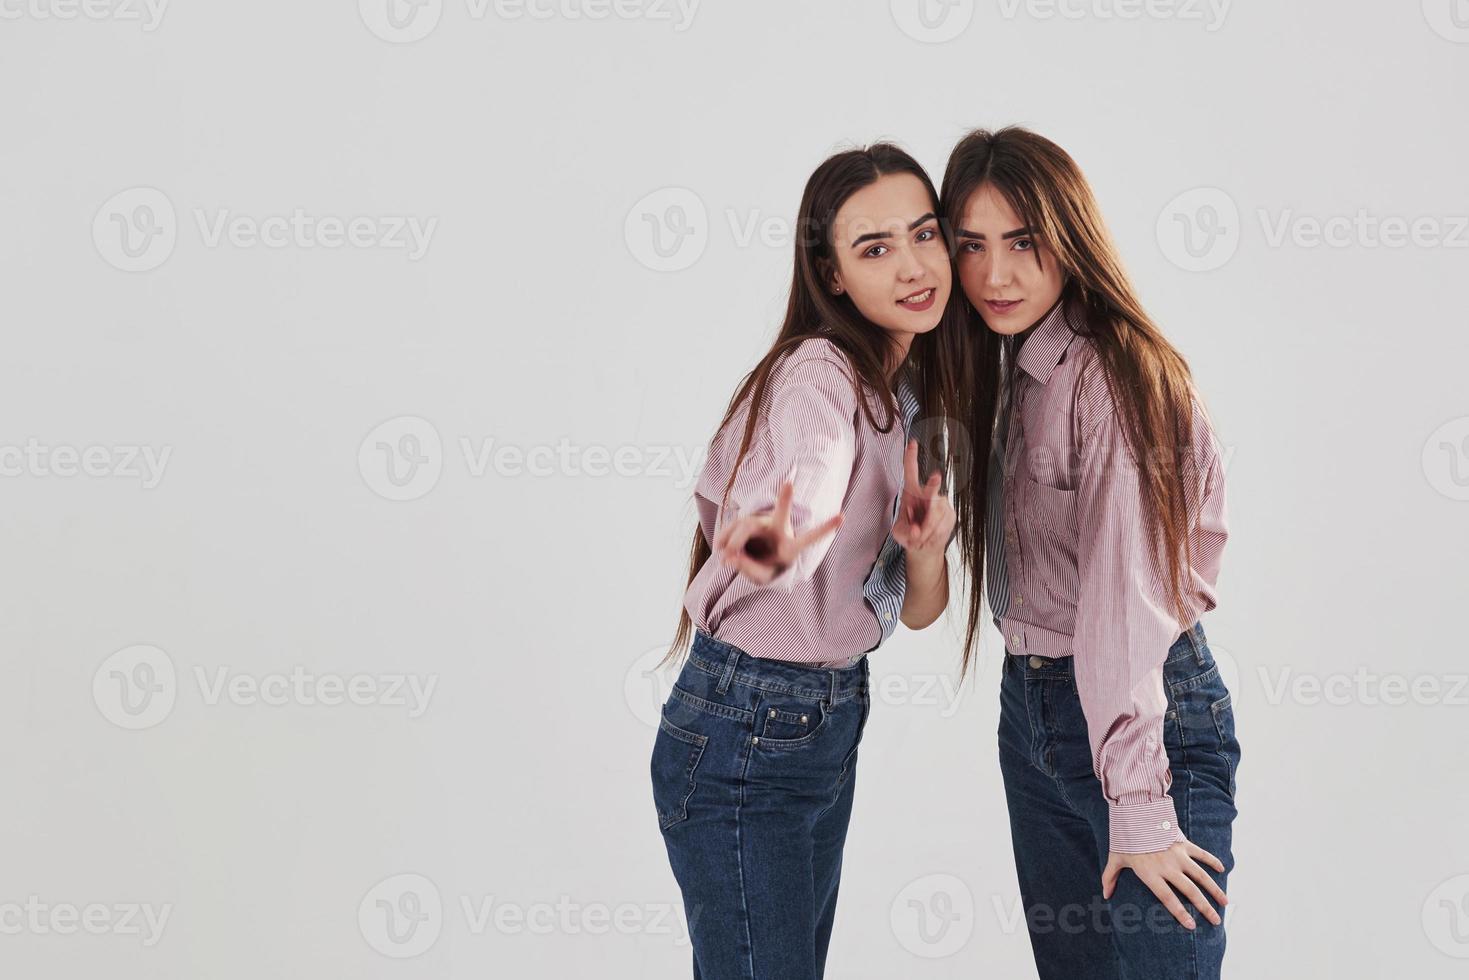 tittar rakt in i kameran och visar gester. två systrar tvillingar står och poserar i studion med vit bakgrund foto